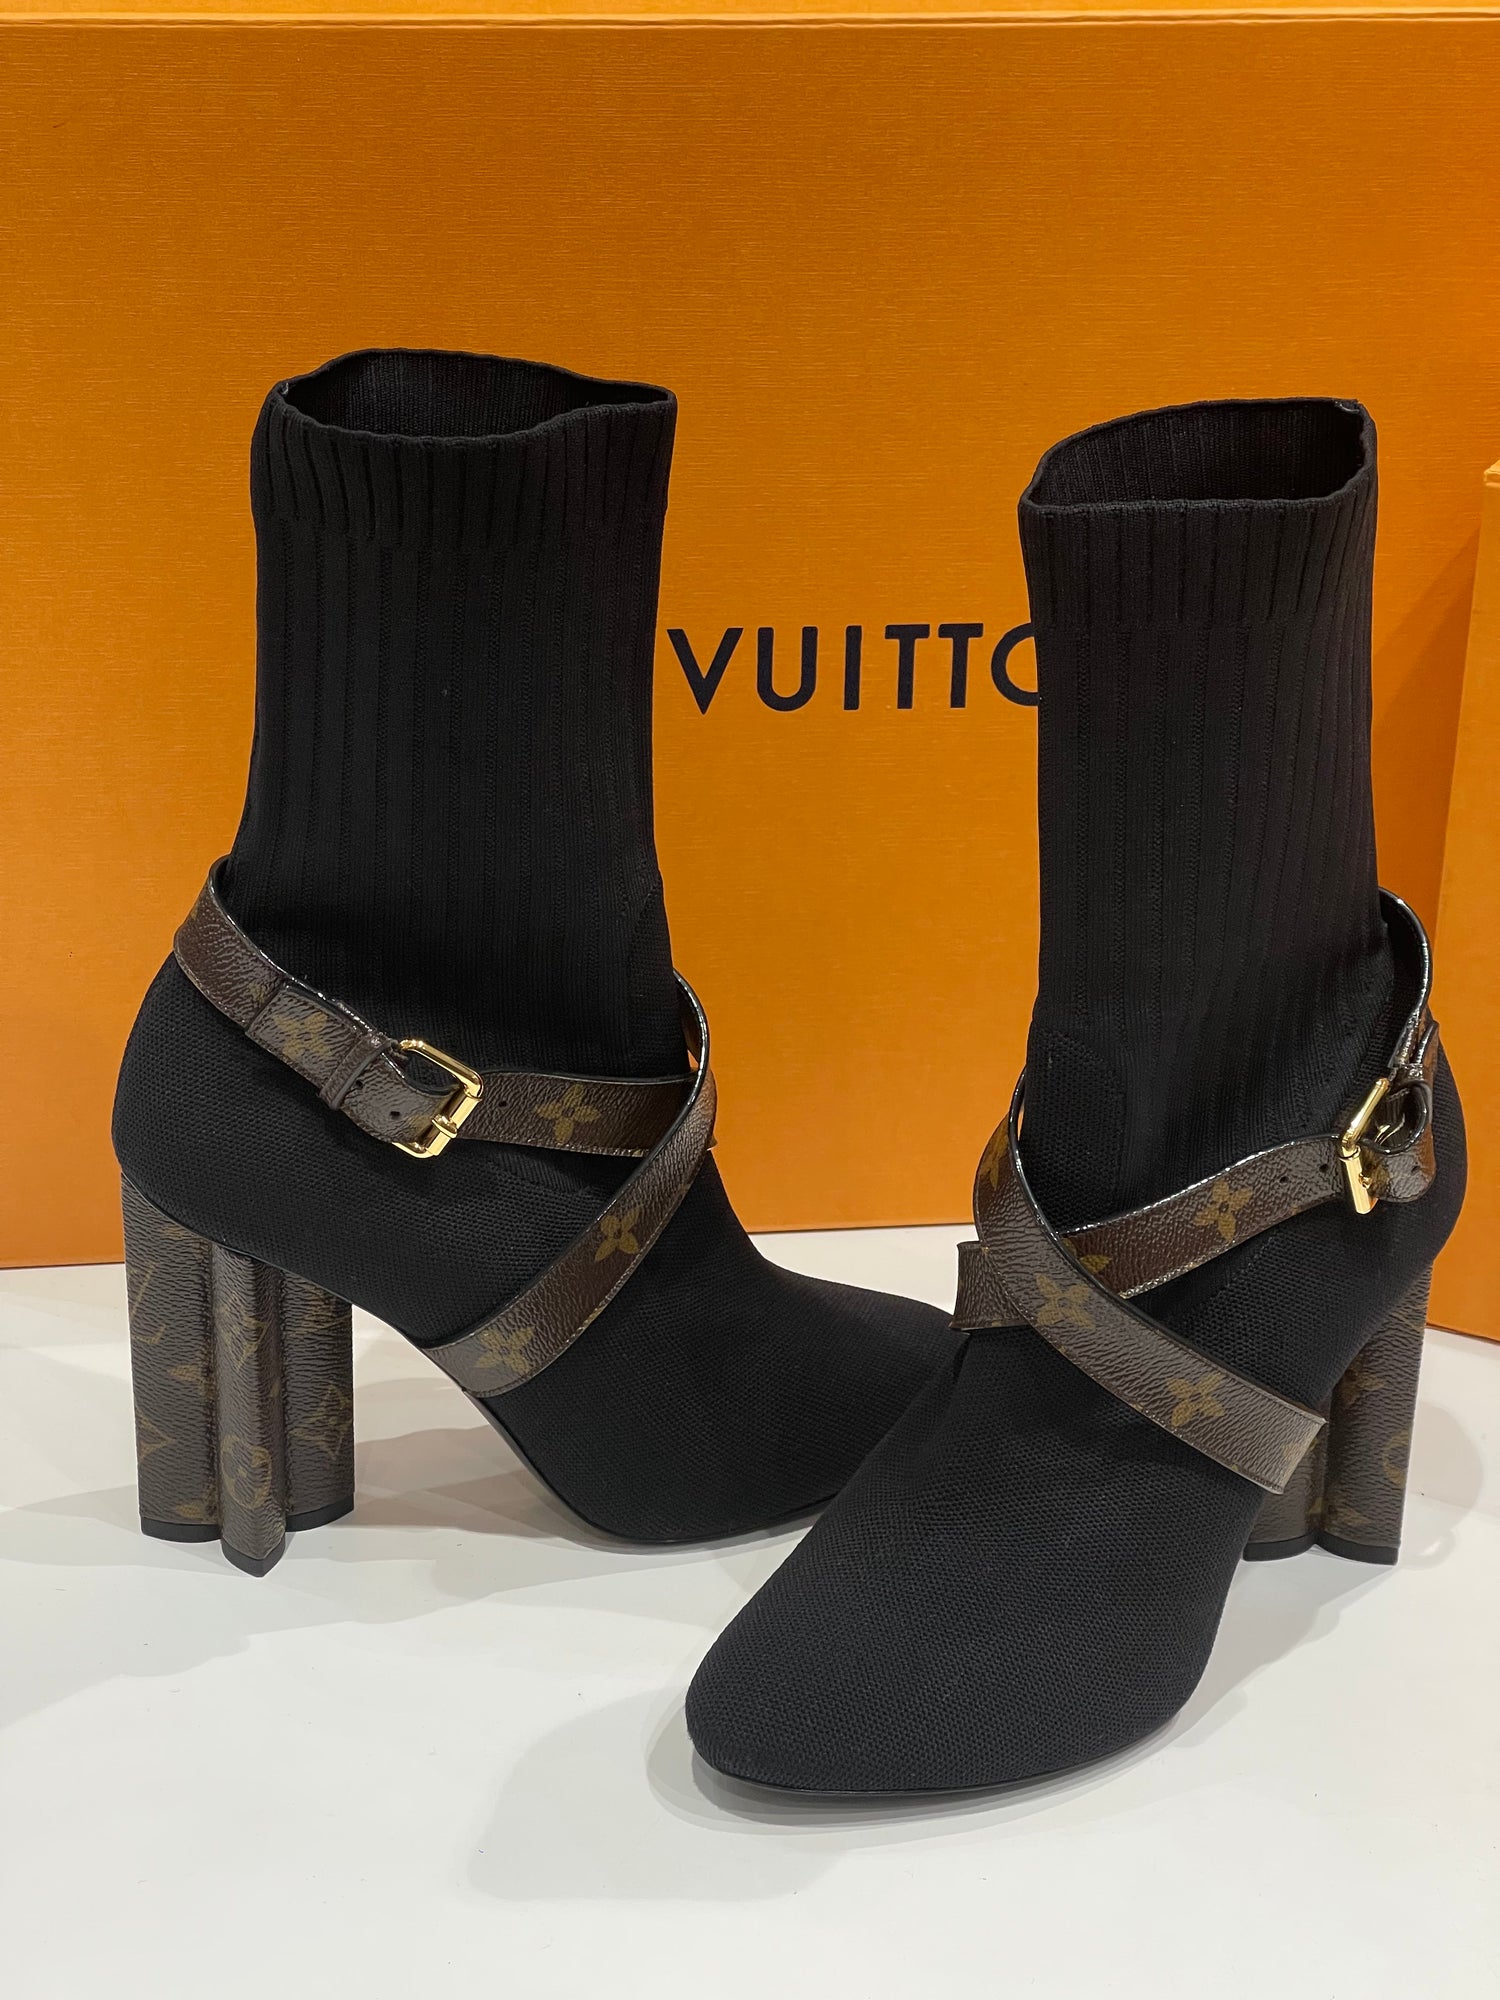 Louis Vuitton - T40 袜套踝靴